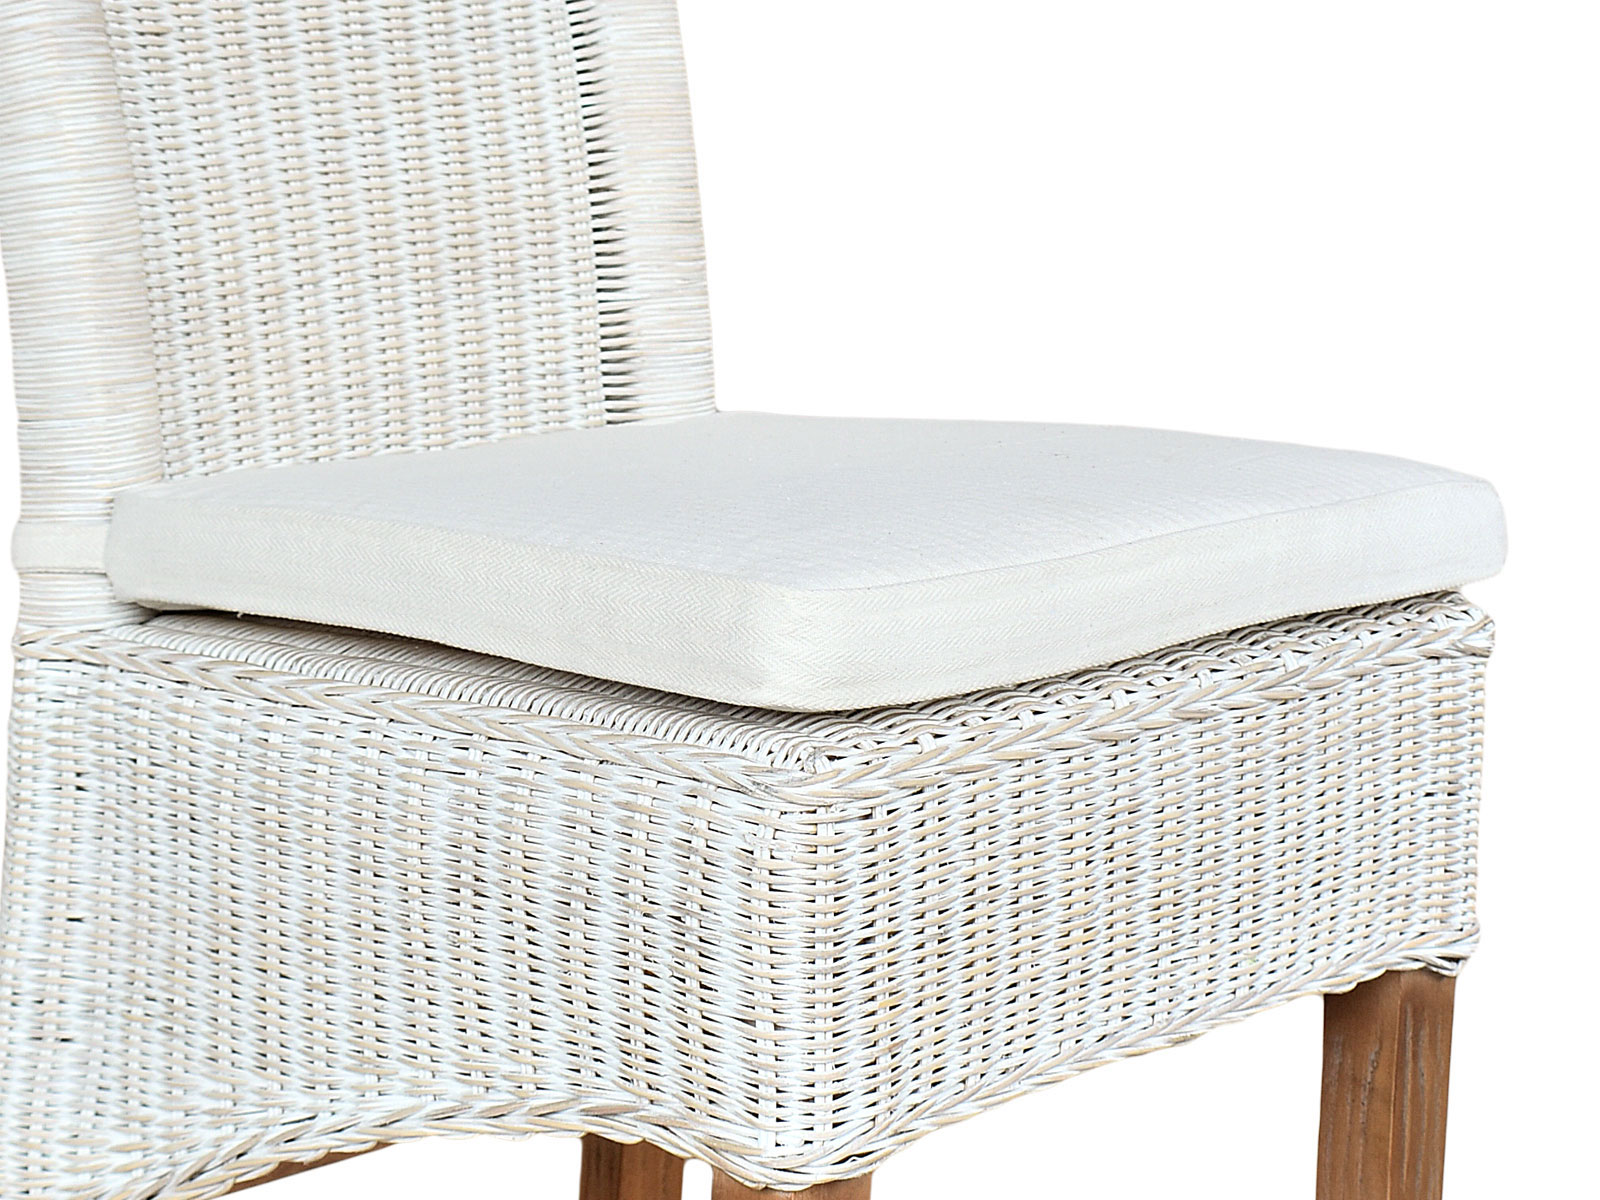 Perth Rattan Essstisch weiß natur Stuhl nachhaltig Wohnen Korbstuhl Casamia | Rattanstuhl Stuhl Esszimmer